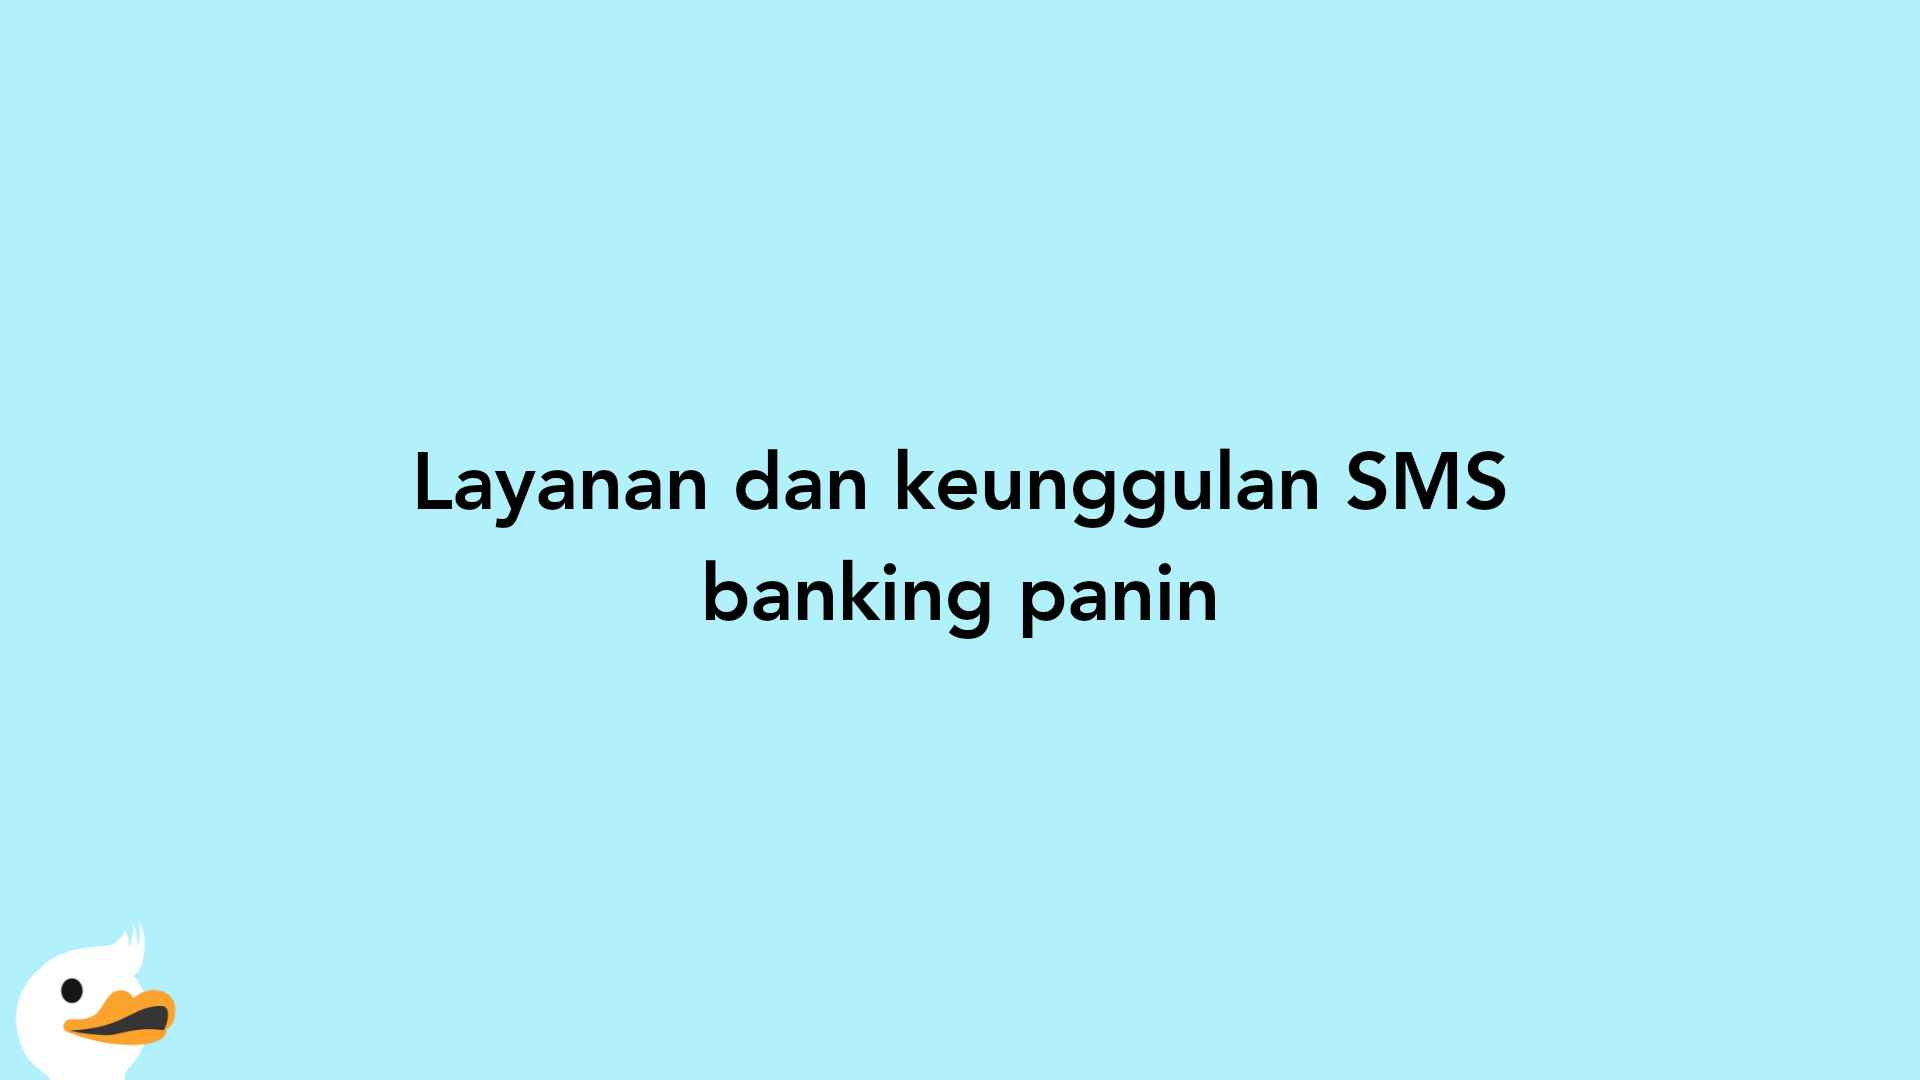 Layanan dan keunggulan SMS banking panin